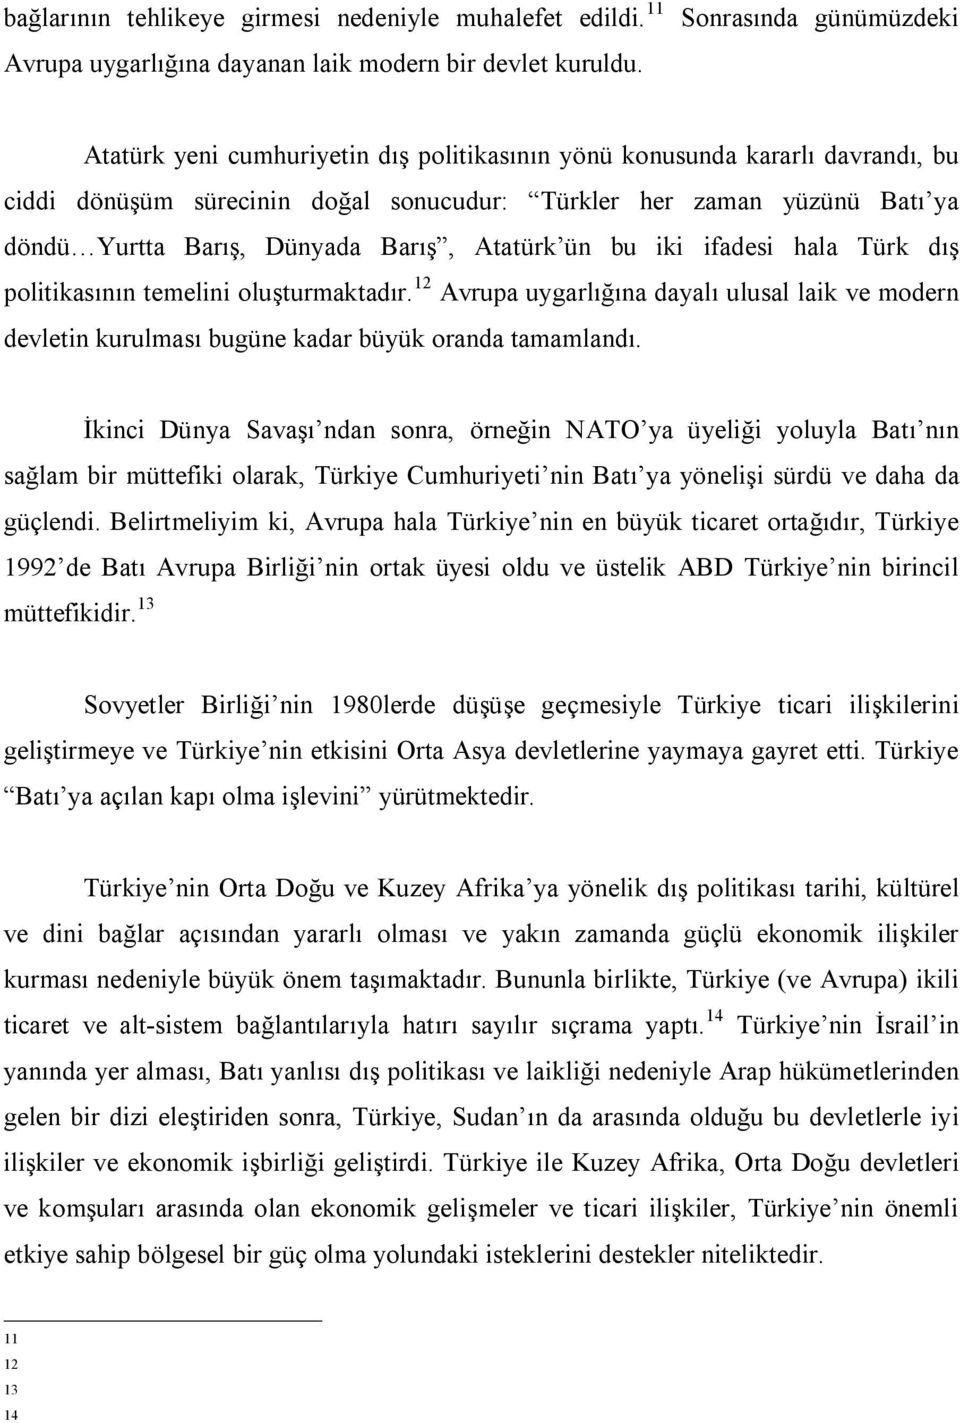 Dünyada Barış, Atatürk ün bu iki ifadesi hala Türk dış politikasının temelini oluşturmaktadır.